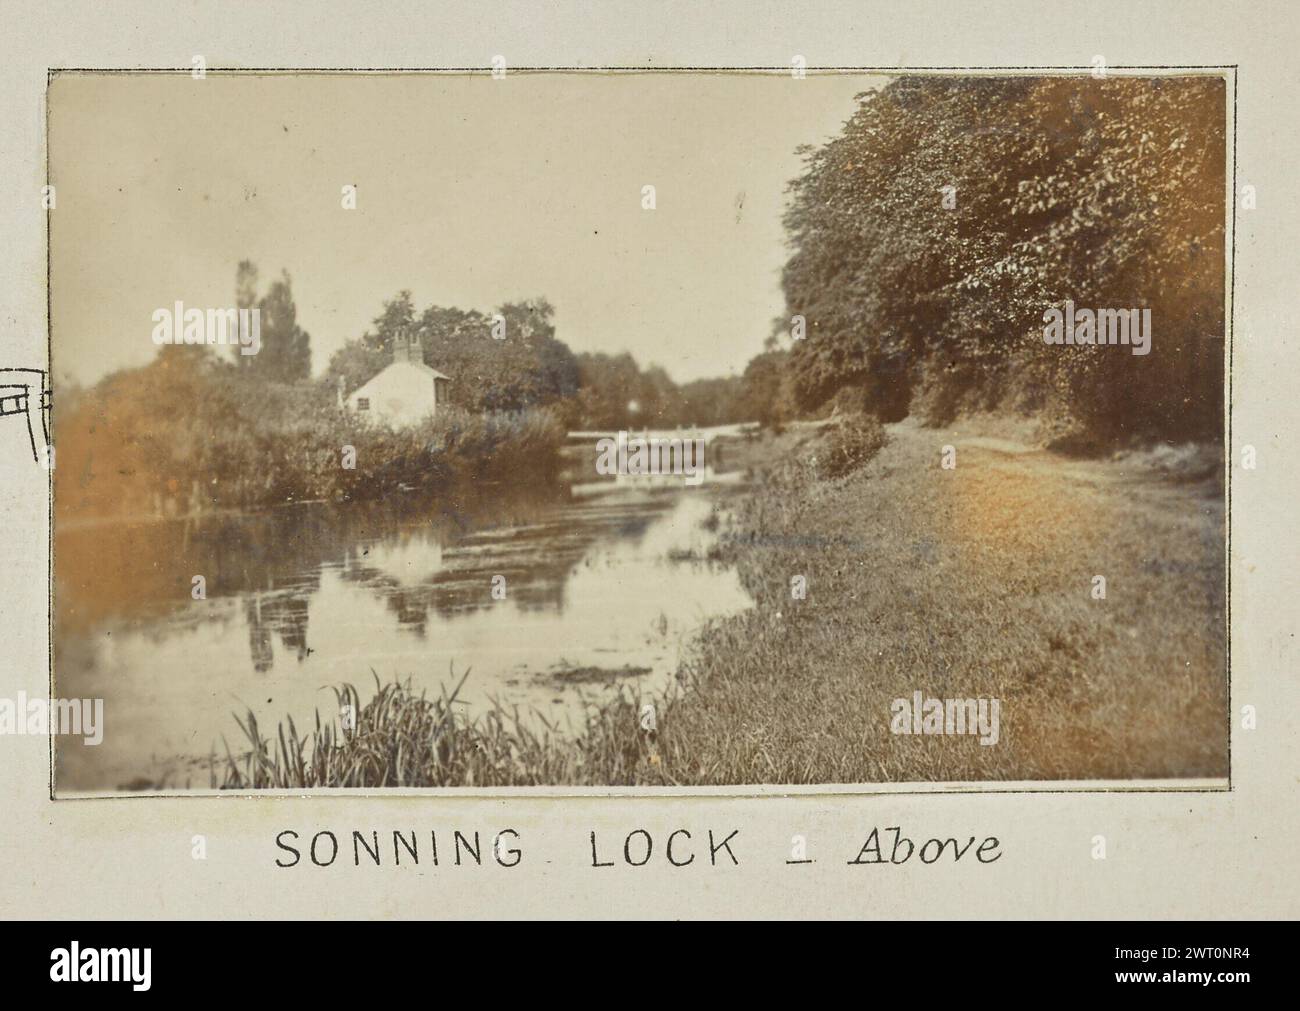 Sonning Lock – Oben. Henry W. Taunt, Fotograf (Britisch, 1842 - 1922) 1897 eines von zwei Fotos mit Tippkarten, die eine gedruckte Karte von Sonning, Shiplake und der Umgebung entlang der Themse zeigen. Das Foto zeigt einen Blick auf den Fluss mit dem Sonning Lock, das in der Entfernung flussabwärts sichtbar ist. Das Schloss Cottage befindet sich am Ufer auf der linken Seite des Bildes. (Recto, Halterung) unten in der Mitte, unter dem Bild, in schwarzer Tinte gedruckt: „SONNING LOCK - above [kursiv]“ Stockfoto